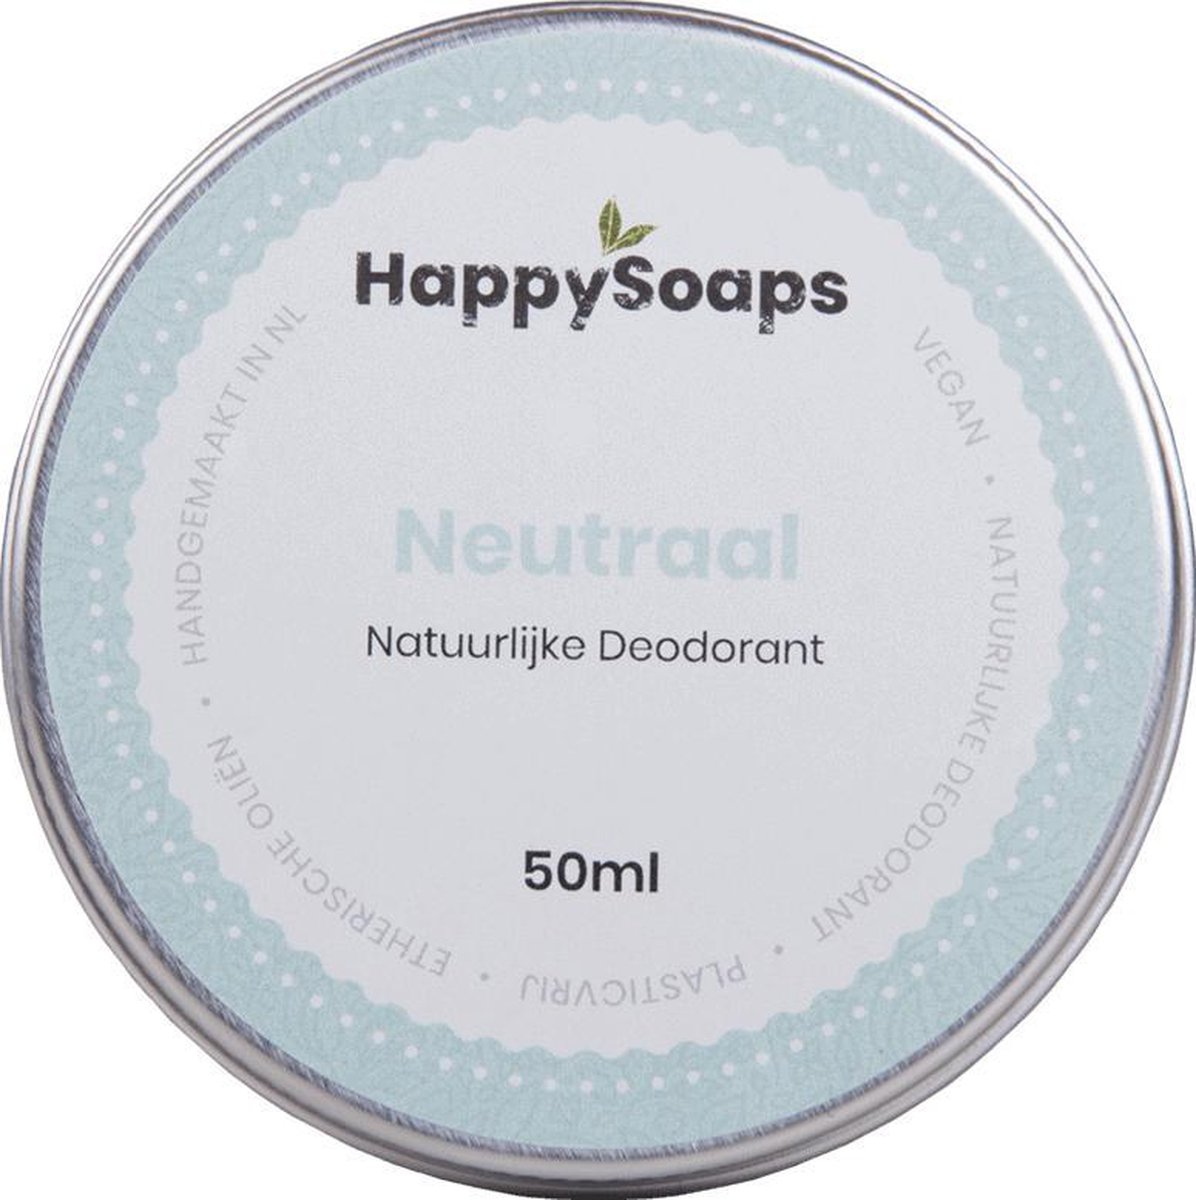 HappySoaps Natuurlijke Deodorant - Neutraal - Onopvallend & Effectief - 100% Plasticvrij, Vegan & Natuurlijk - 50gr